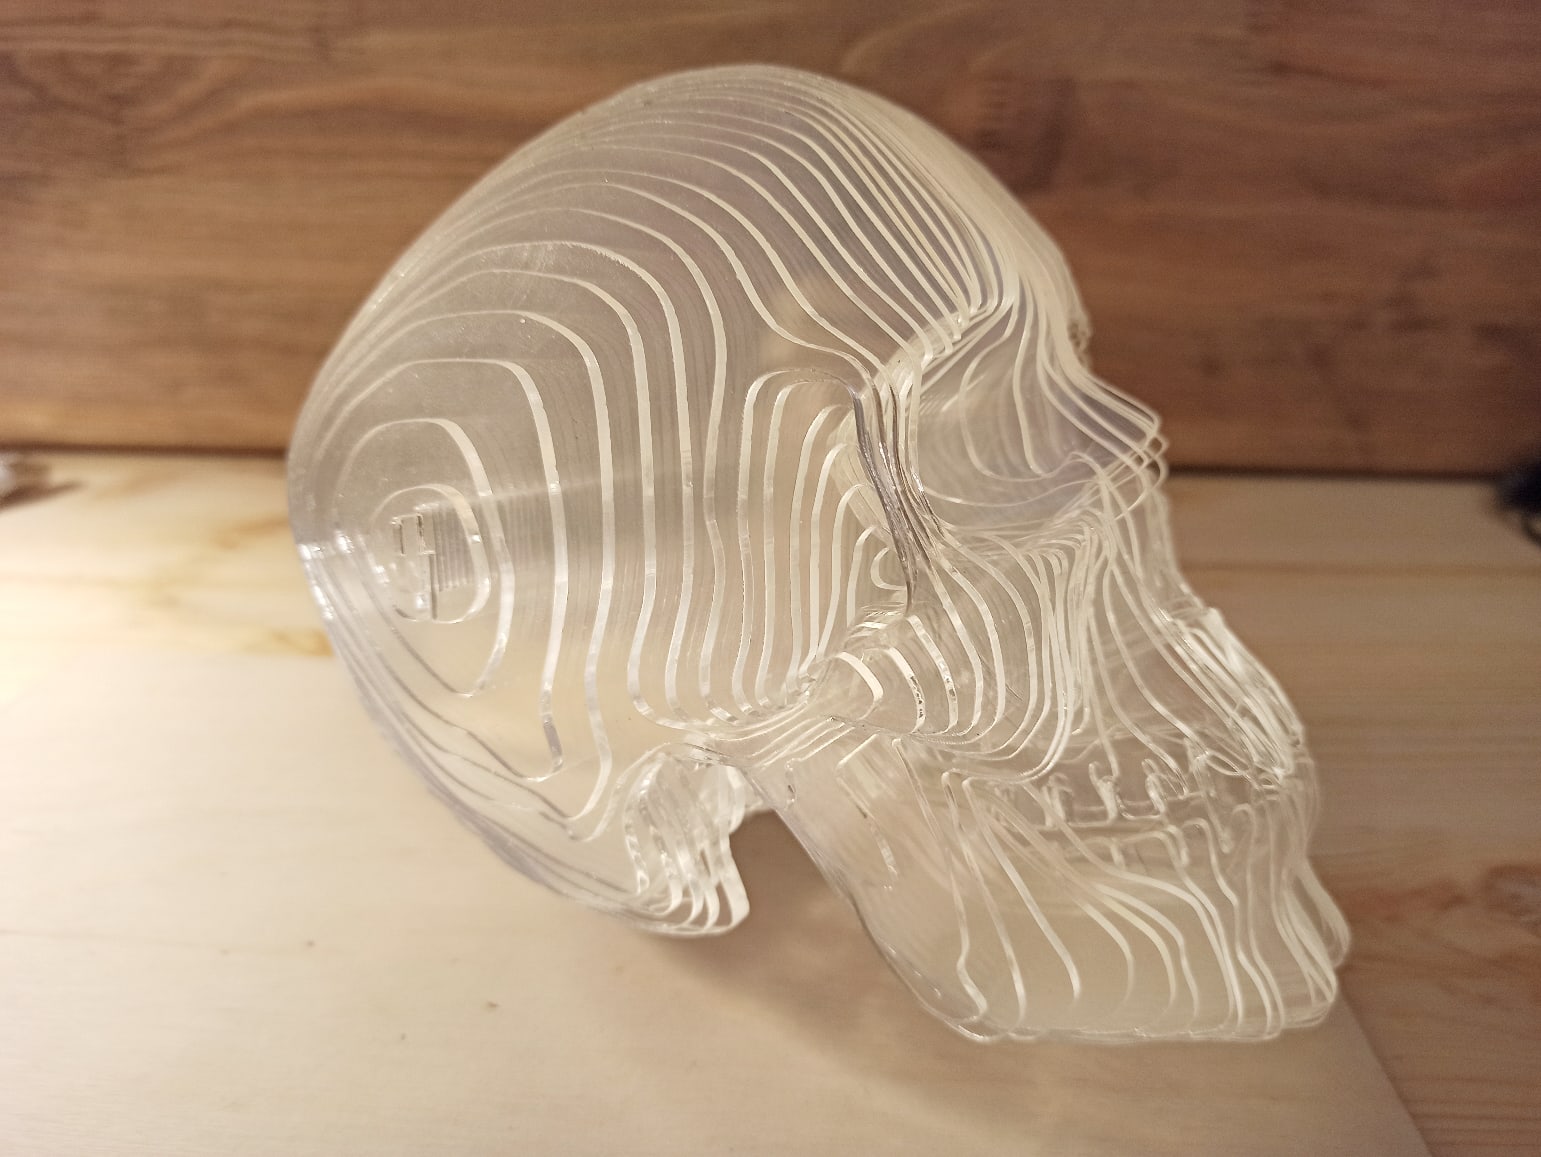 激光切割亚克力 3D 头骨模型